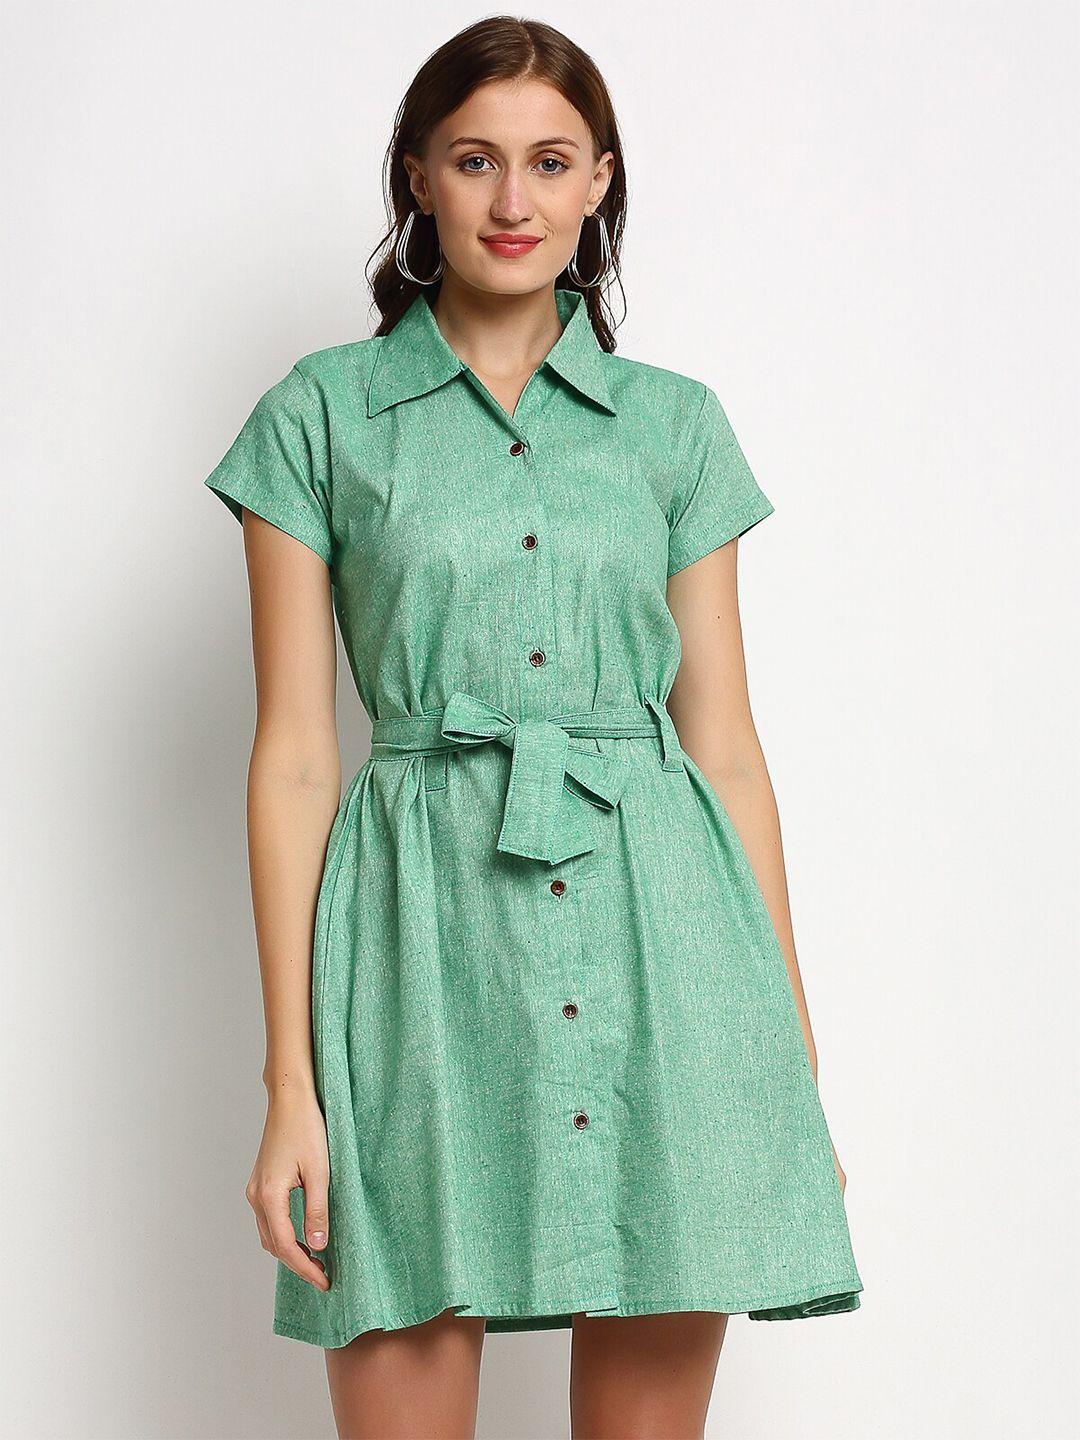 enchanted-drapes-green-shirt-dress